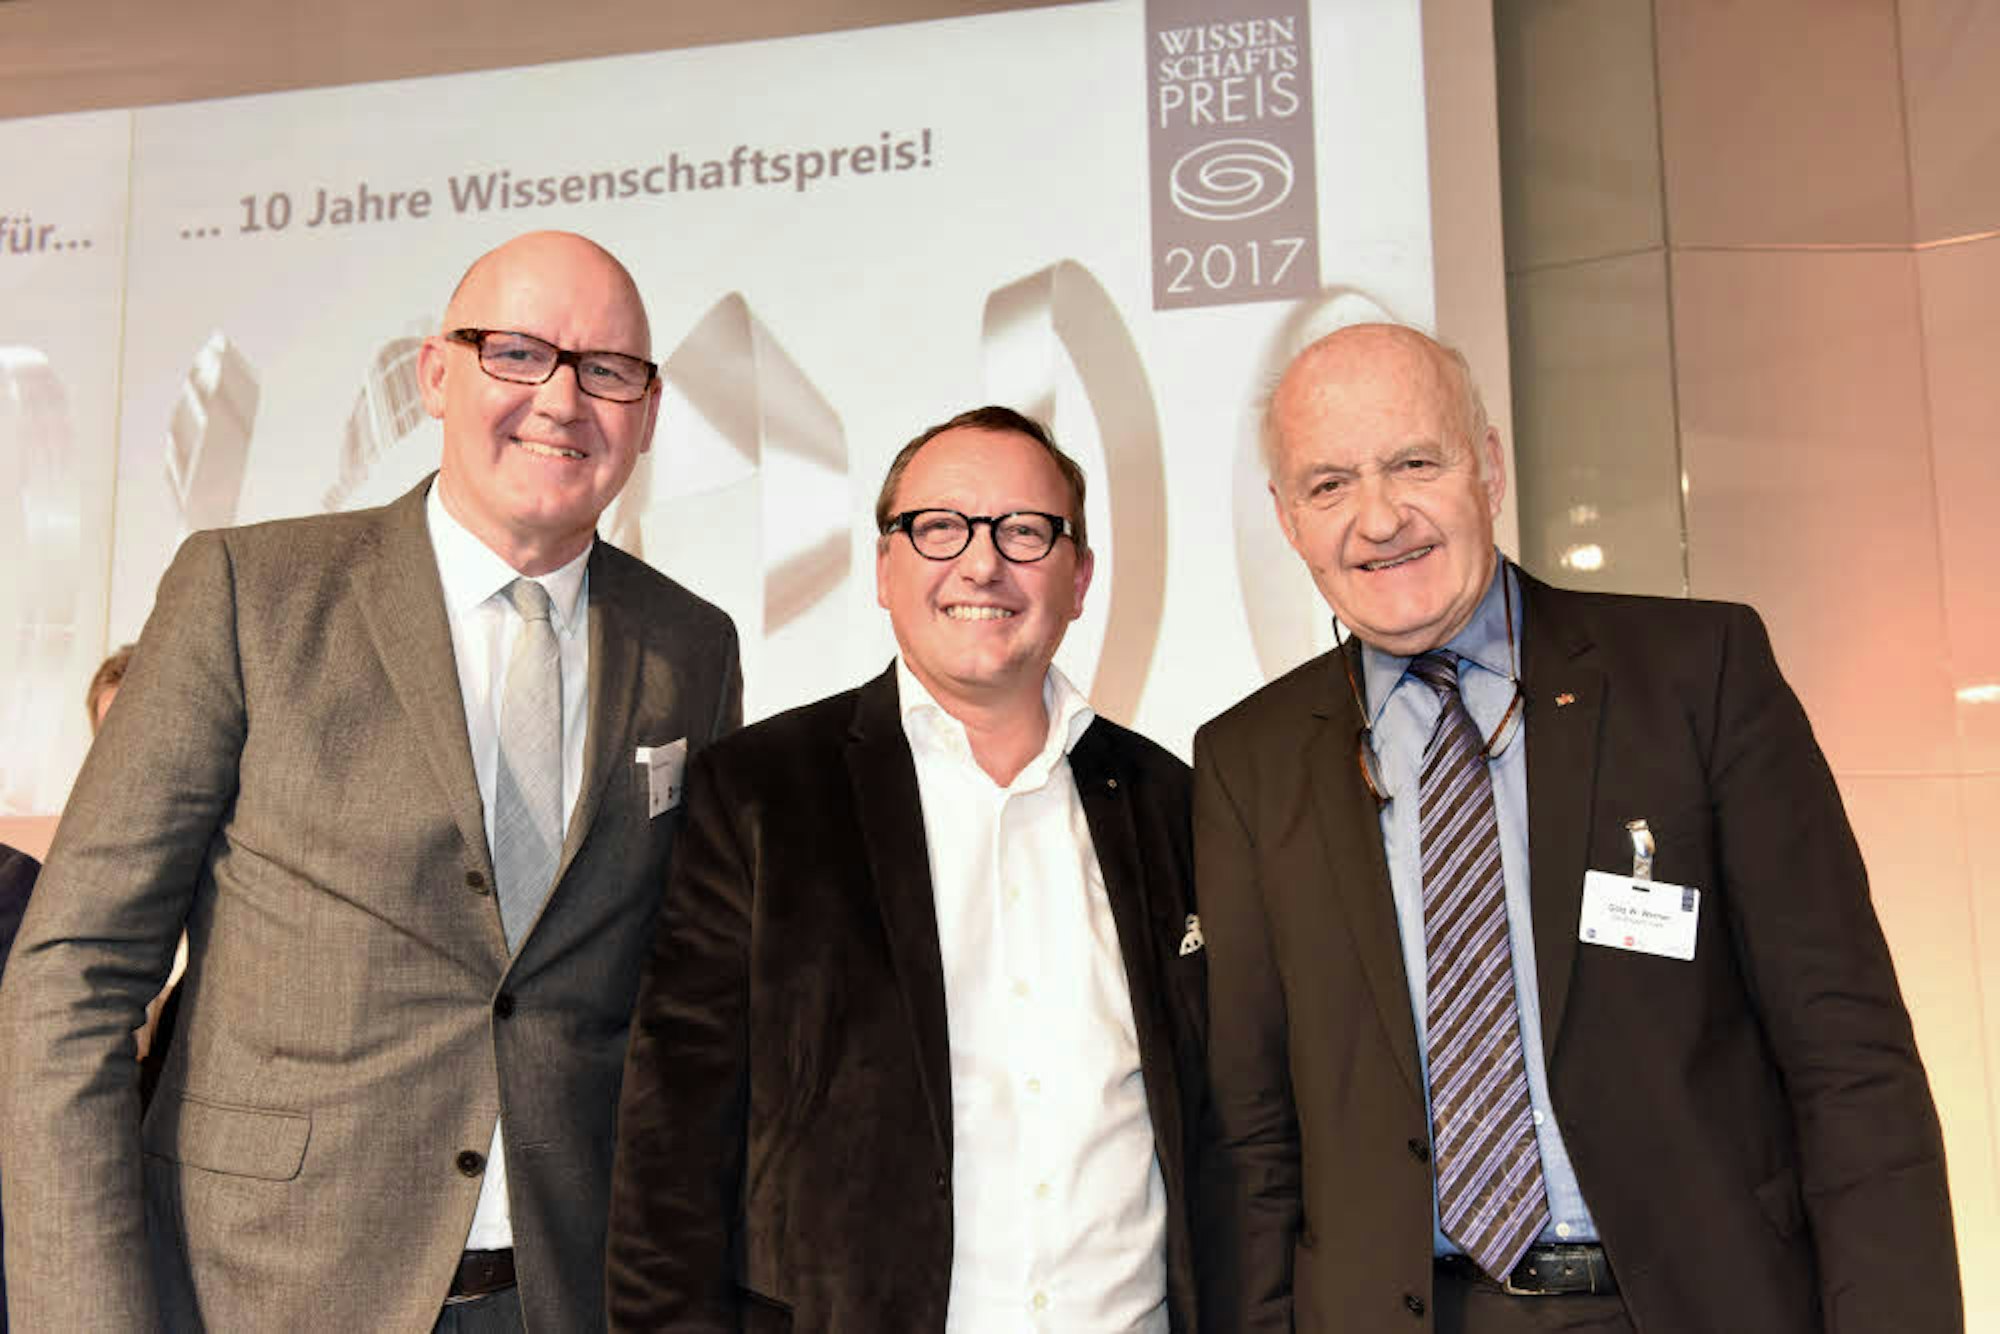 Beim Wissenschaftspreis 2017 steht Karl-Heinz Land neben Götz Werner, Gründer der Drogeriemarkt-Kette dm.